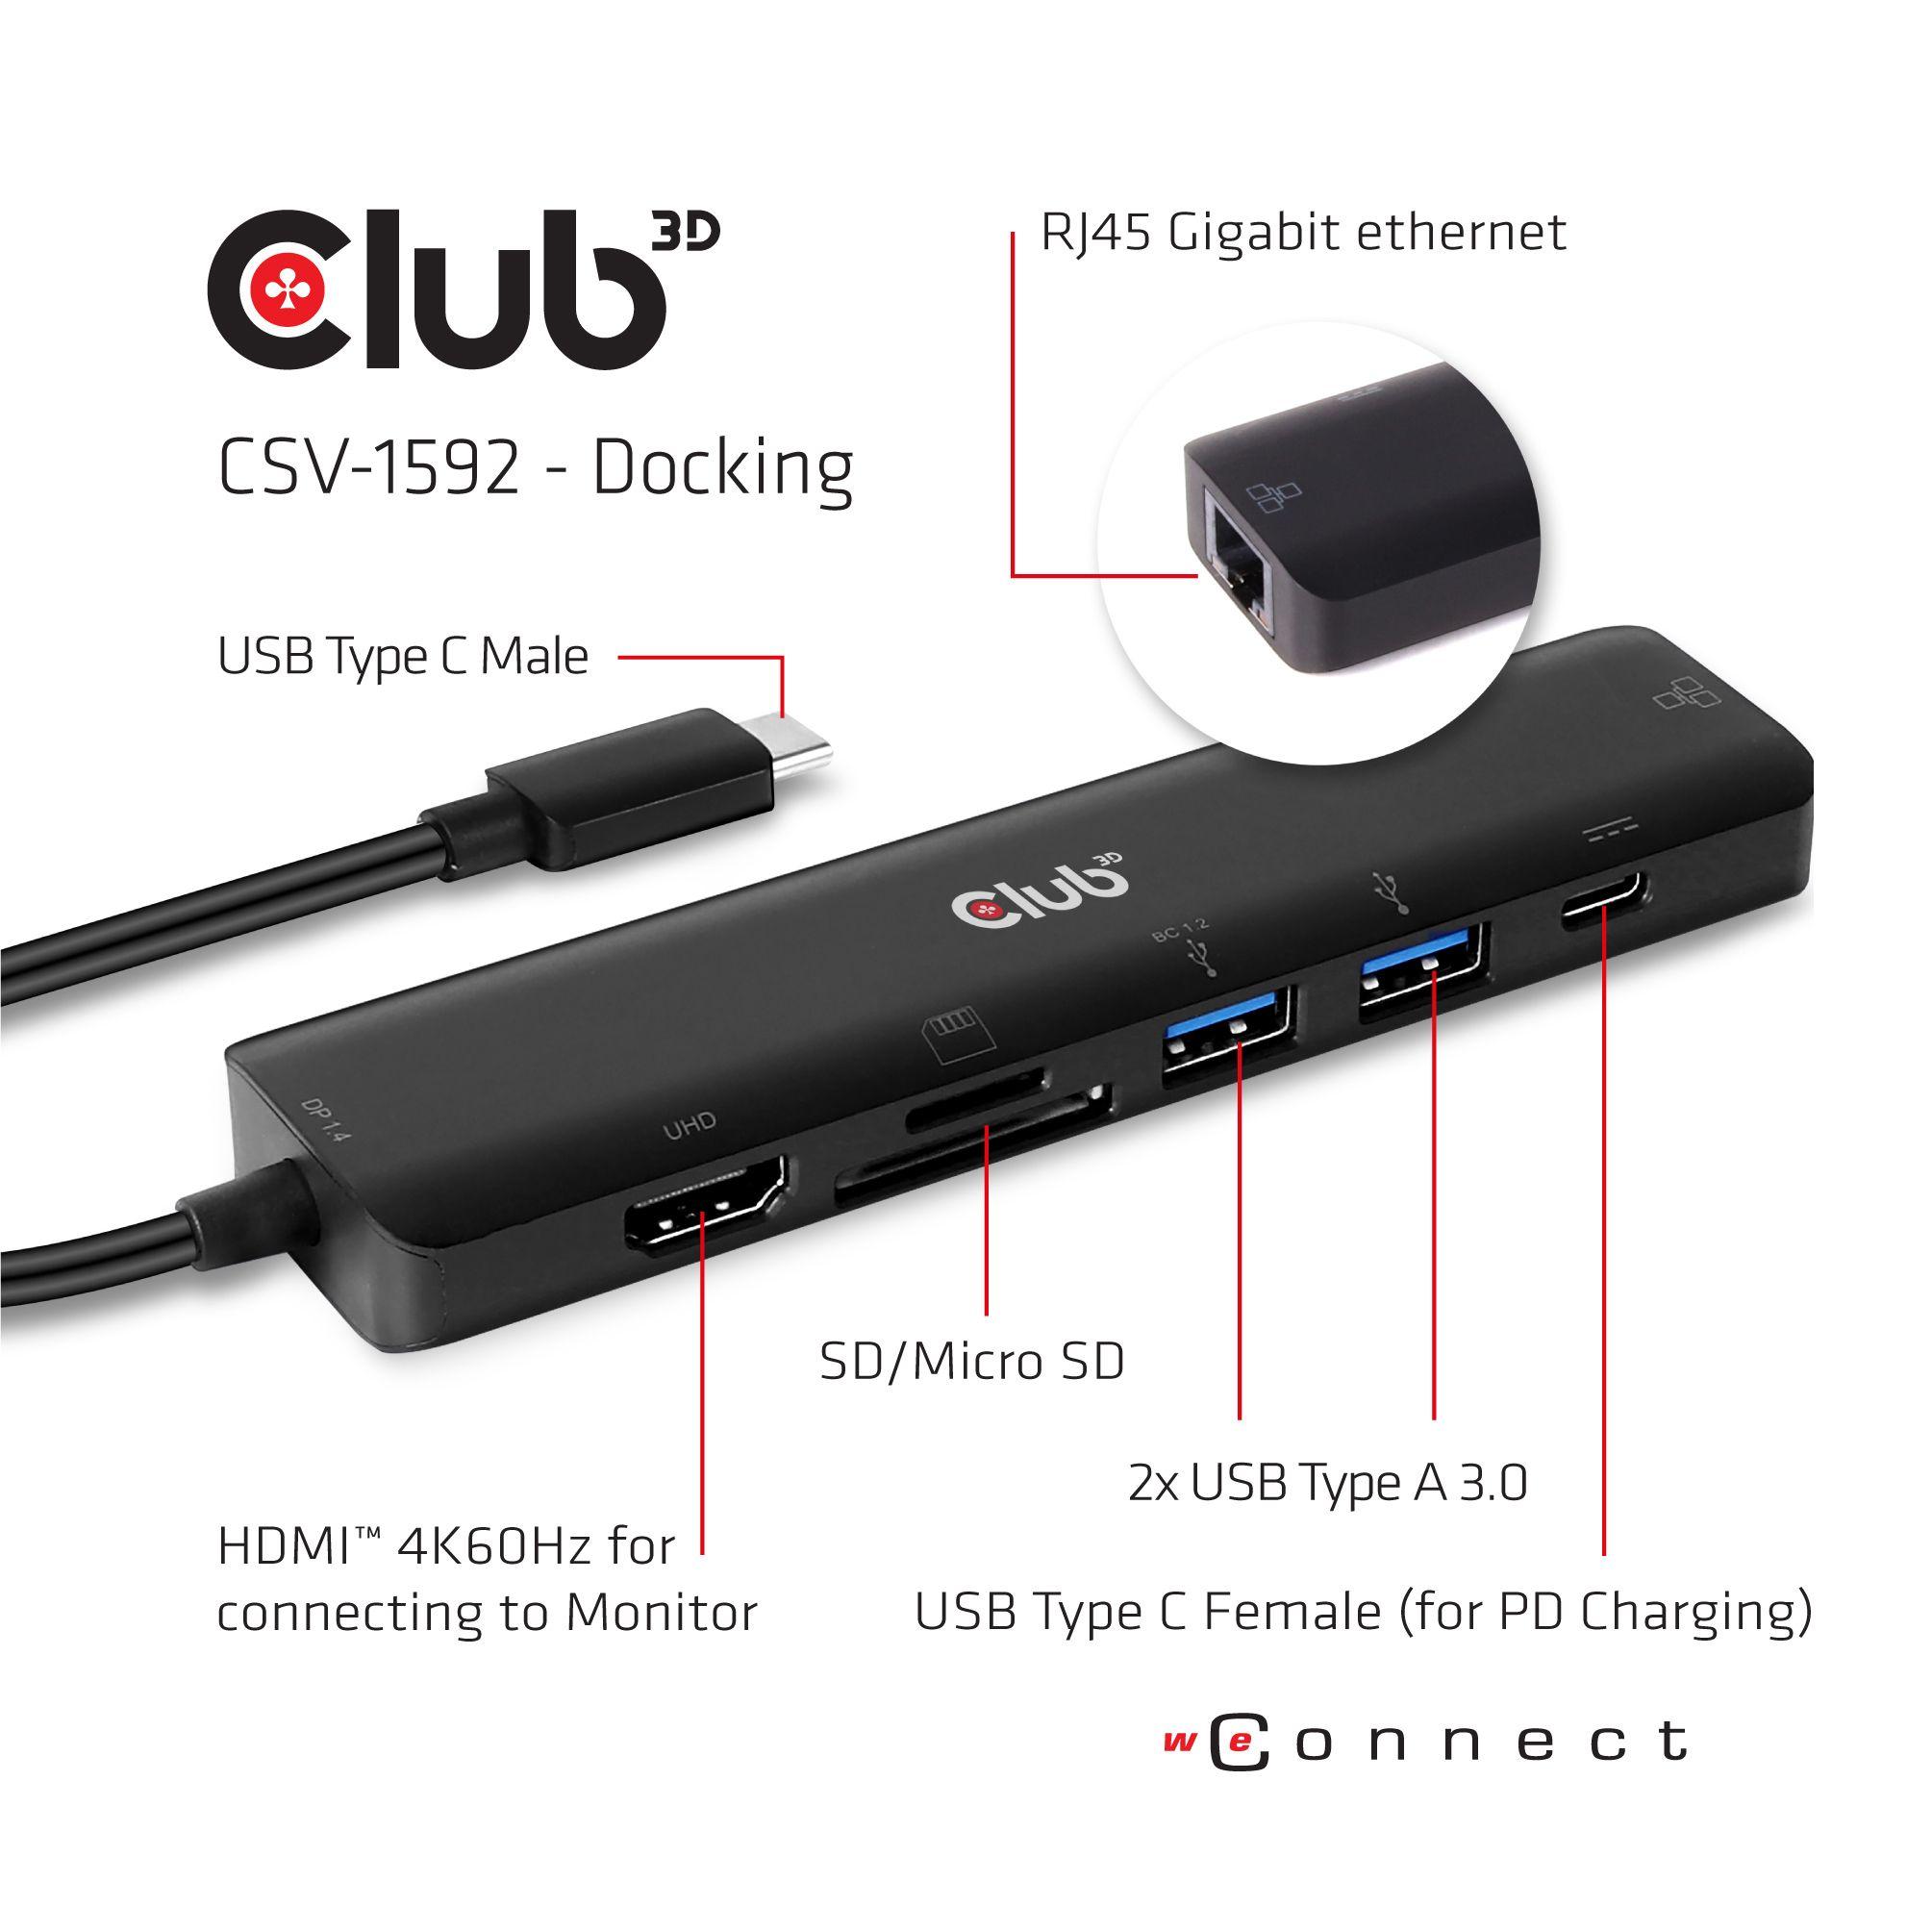 CLUB3D USB Type C 3.2 Gen1 7in1 Hub HDMI 4K60Hz SD TF Card slot 2x USB Type A USB Type C PD RJ45